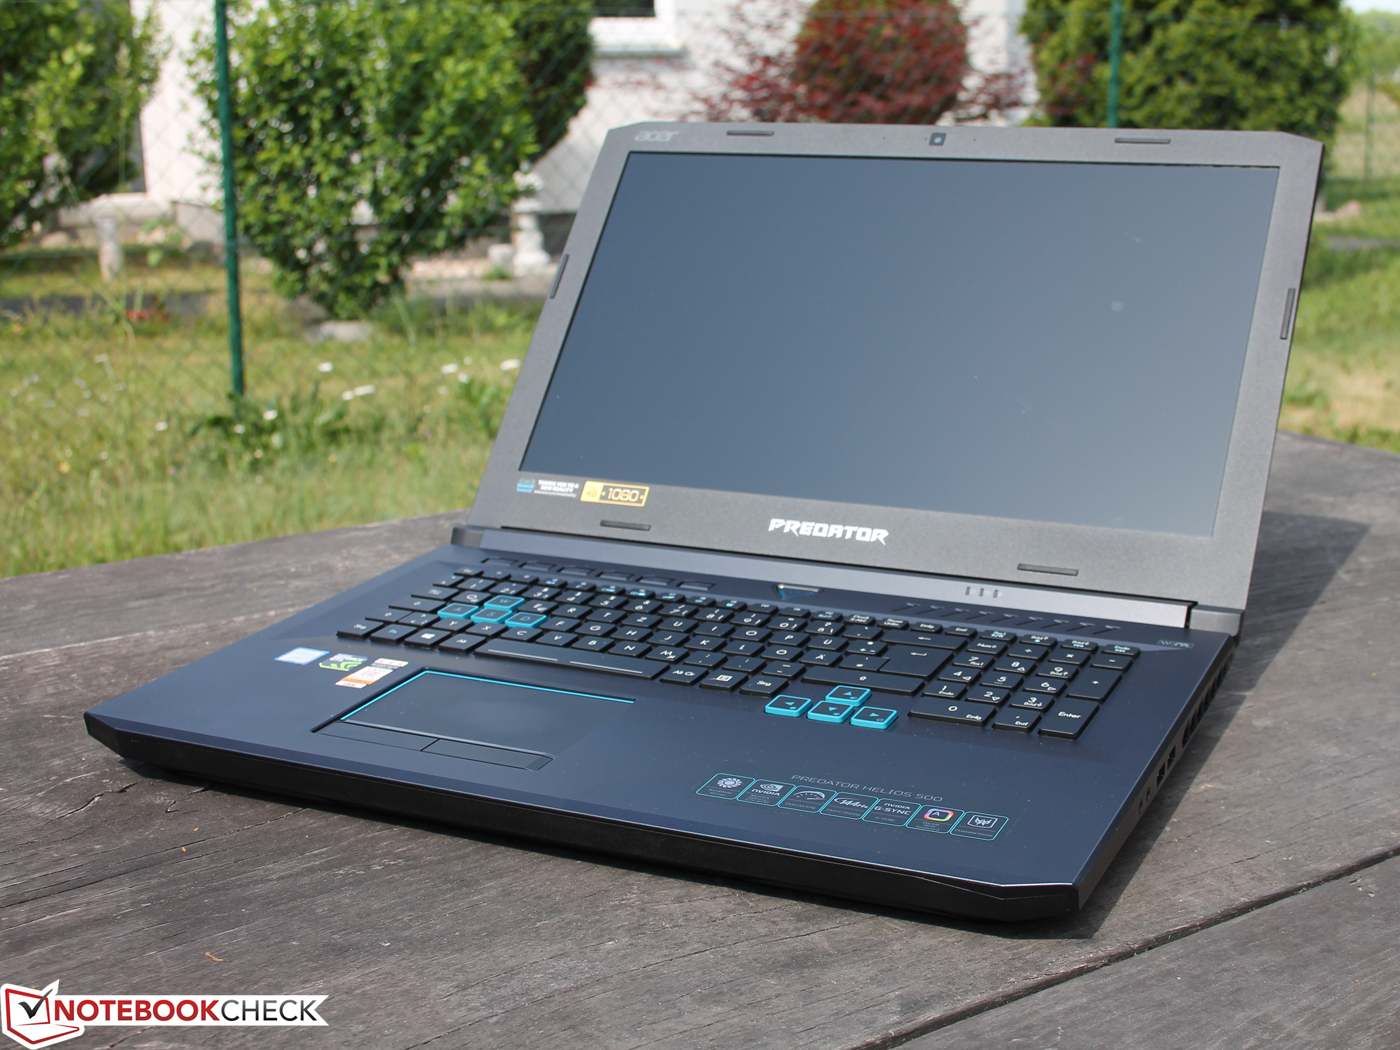  Acer Predator Helios 500  GTX 1070 i7 8750H Laptop 